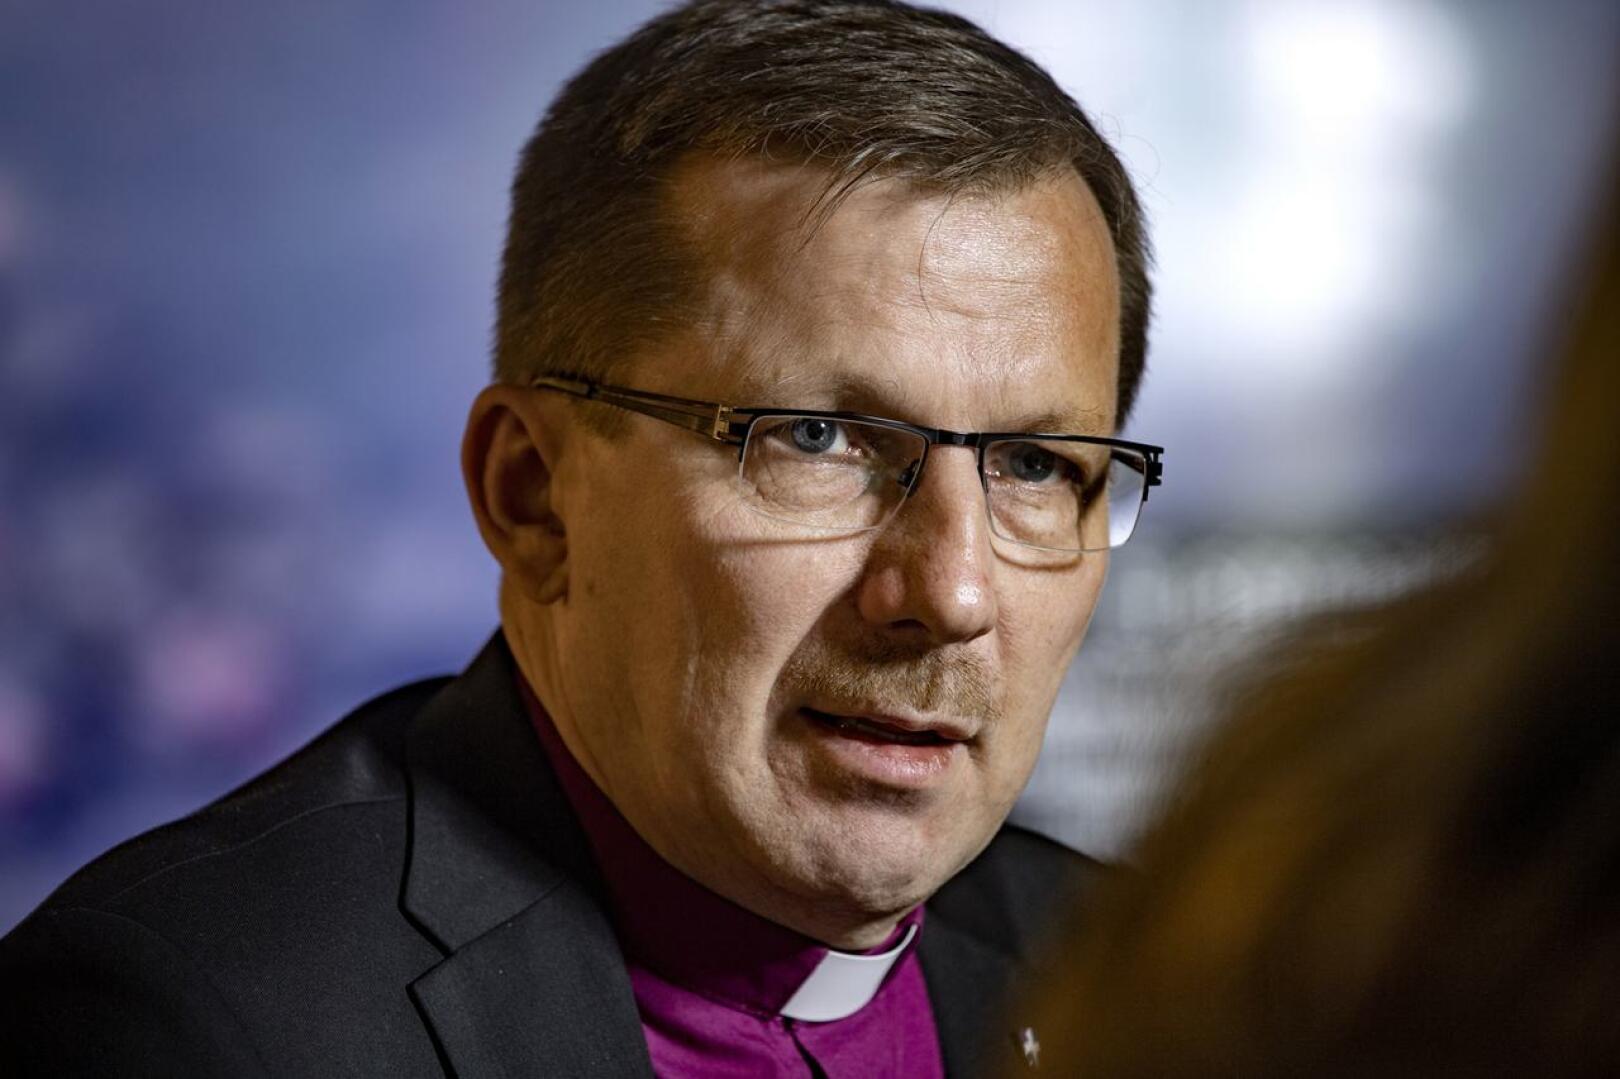 Piispa Jukka Keskitalo kommentoi KHO:n ratkaisua kirkon avioliittokäsityksen toteuttamiseen Haapajärven torilla perjantaina.